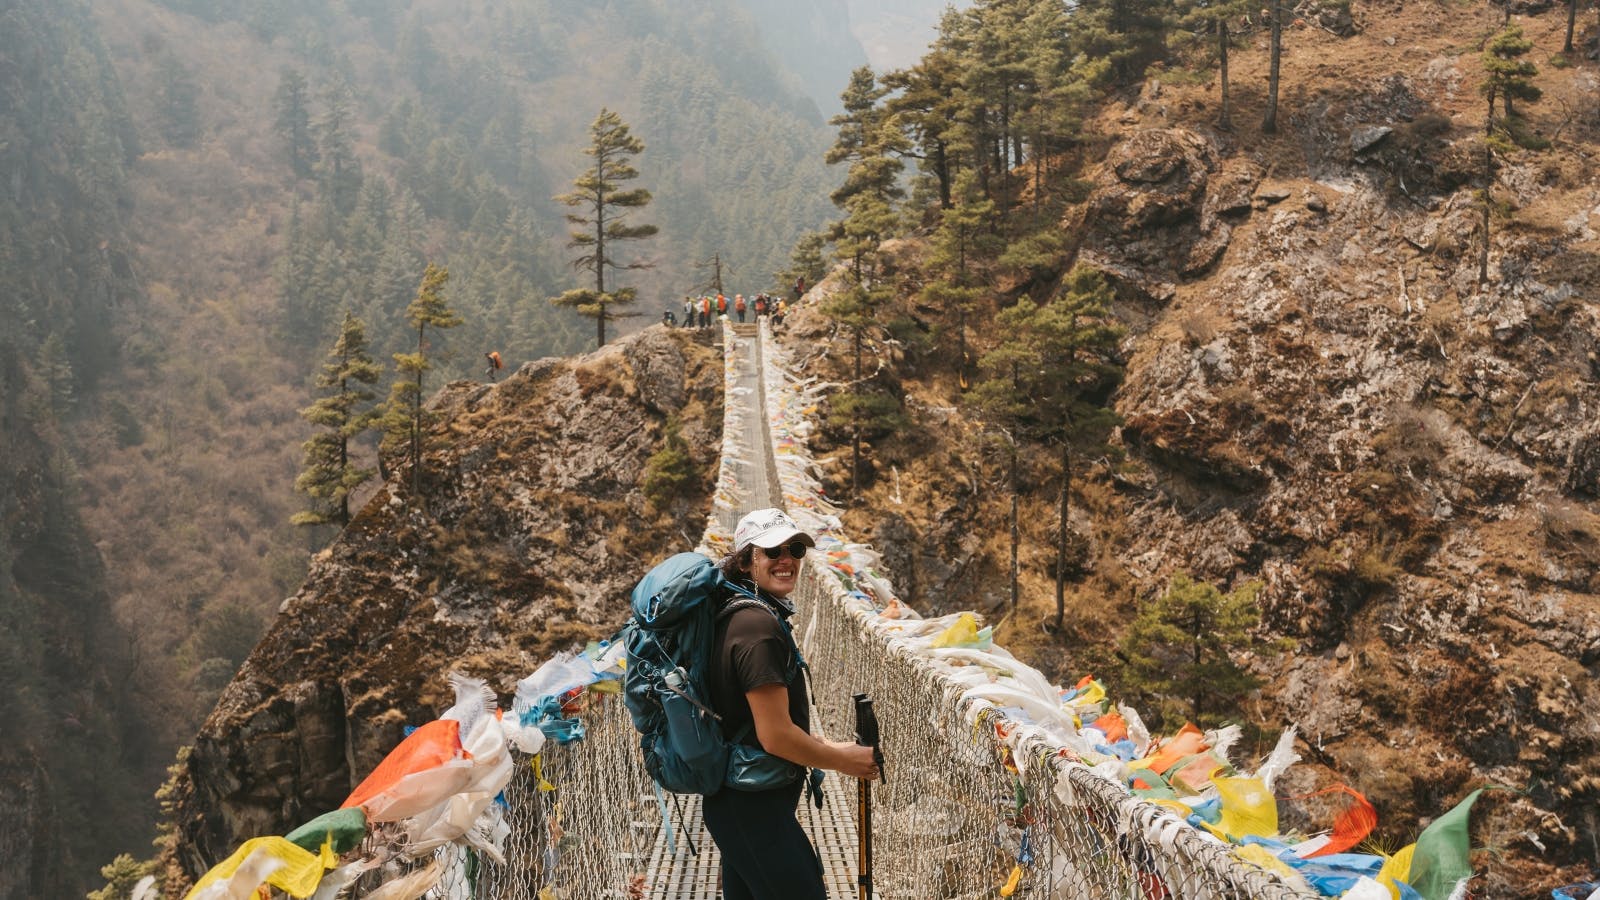 Suspension Bridge at Everest?